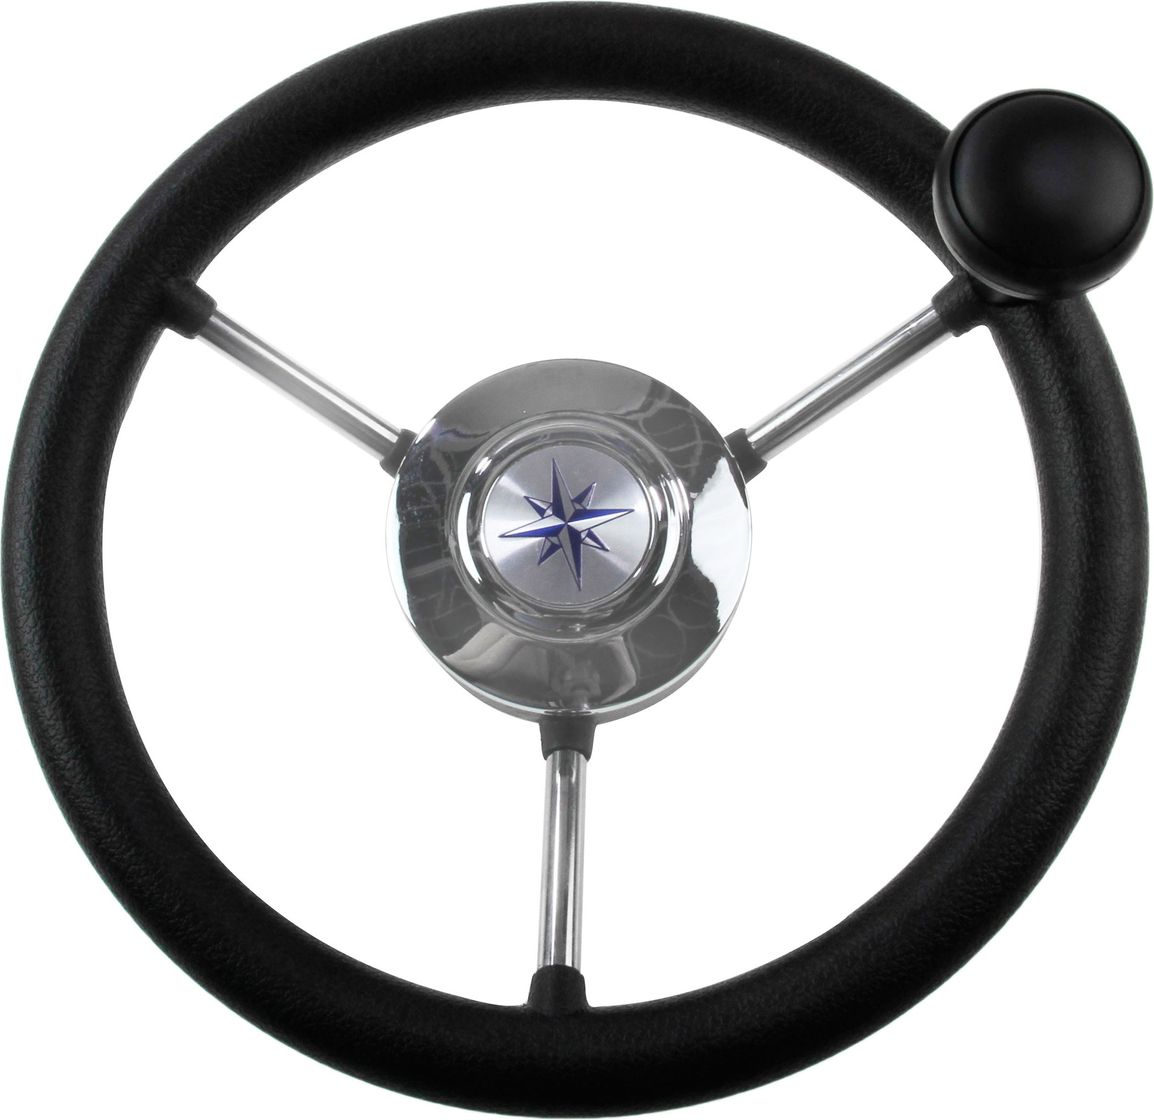 Рулевое колесо LIPARI обод черный, спицы серебряные д. 280 мм со спинером VN828050-01 рулевое колесо riviera обод и спицы д 350 мм со спинером vn8250 01